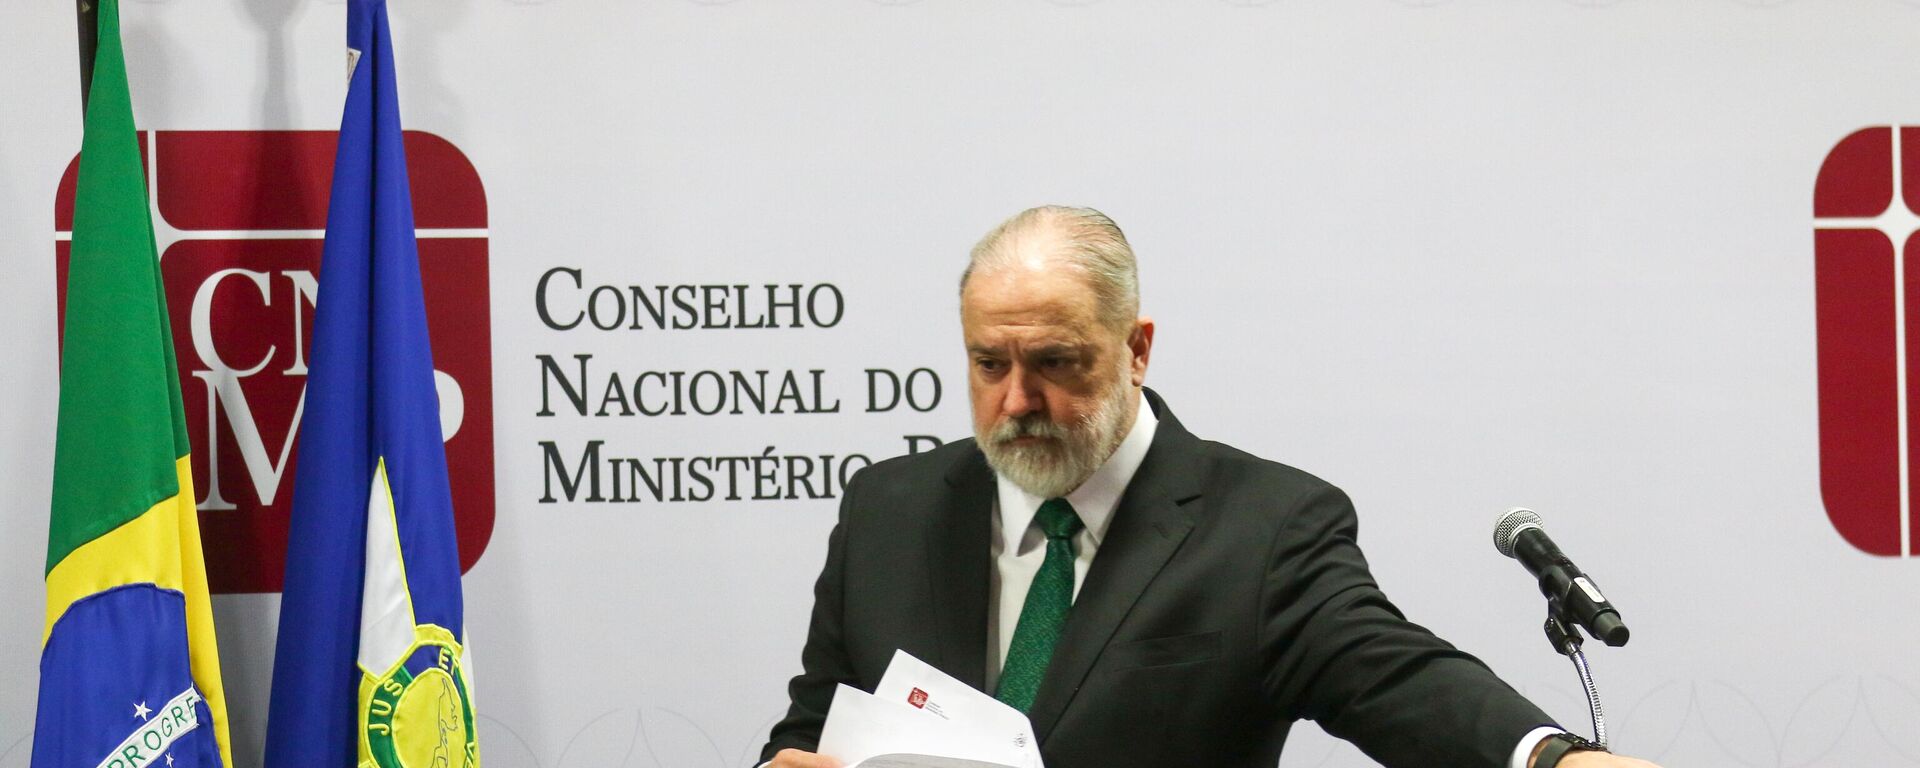 Augusto Aras participa de sua última sessão no Conselho Nacional do Ministério Público (CNMP) como procurador-geral da República, em 25 de setembro de 2023 - Sputnik Brasil, 1920, 25.09.2023